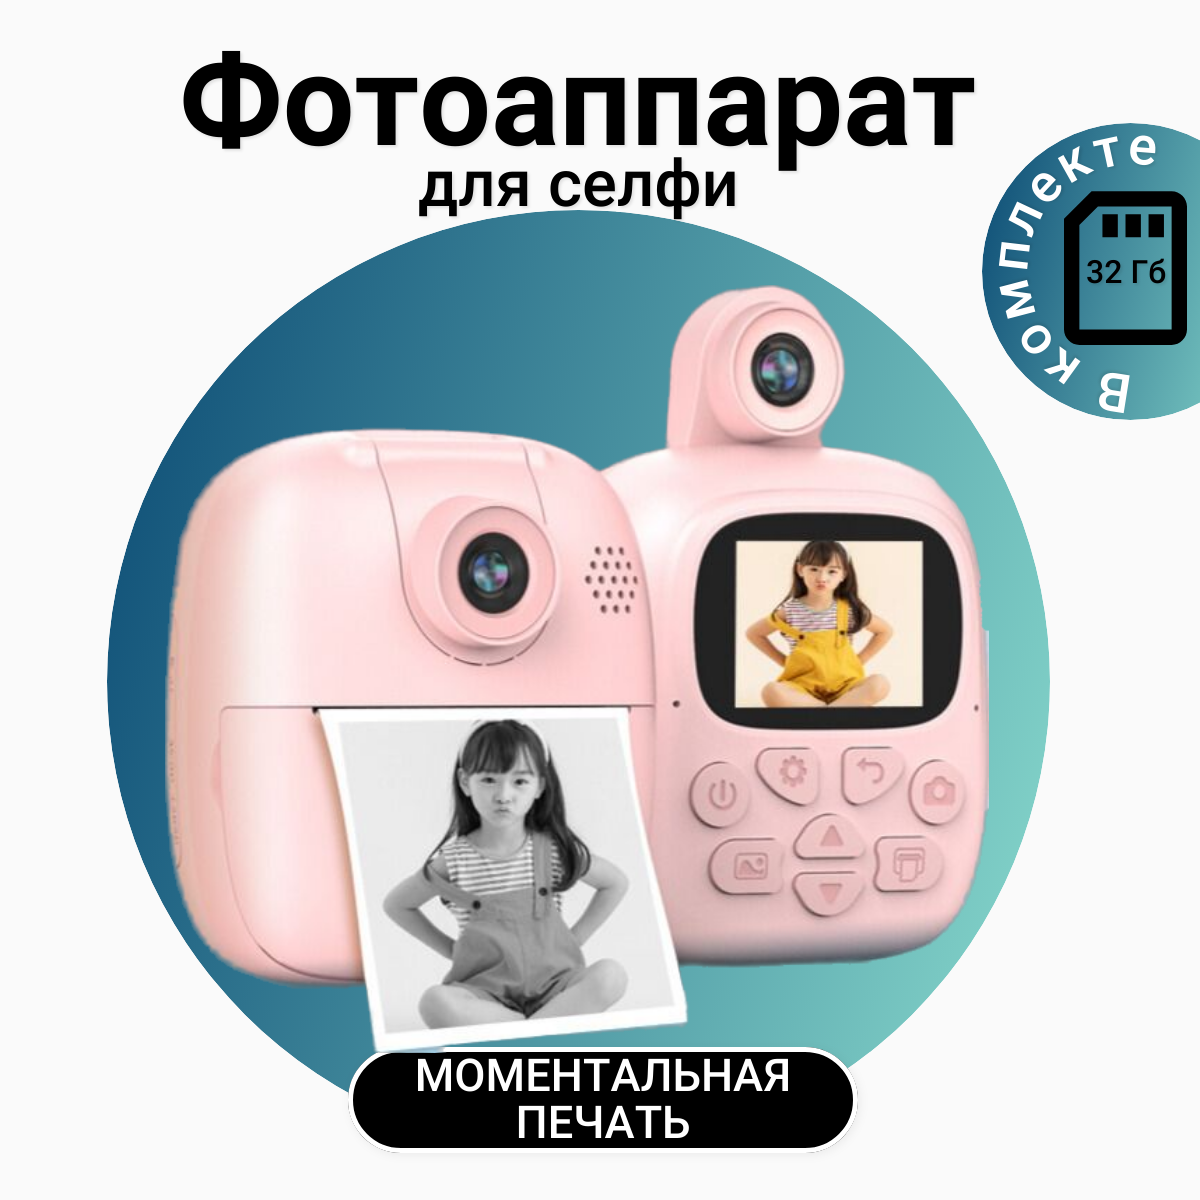 Детский фотоаппарат моментальной печати HAPPY PATTY с камерой для селфи розовый детский фотоаппарат print camera моментальной печати обезьянка полароид cd карта 32gb